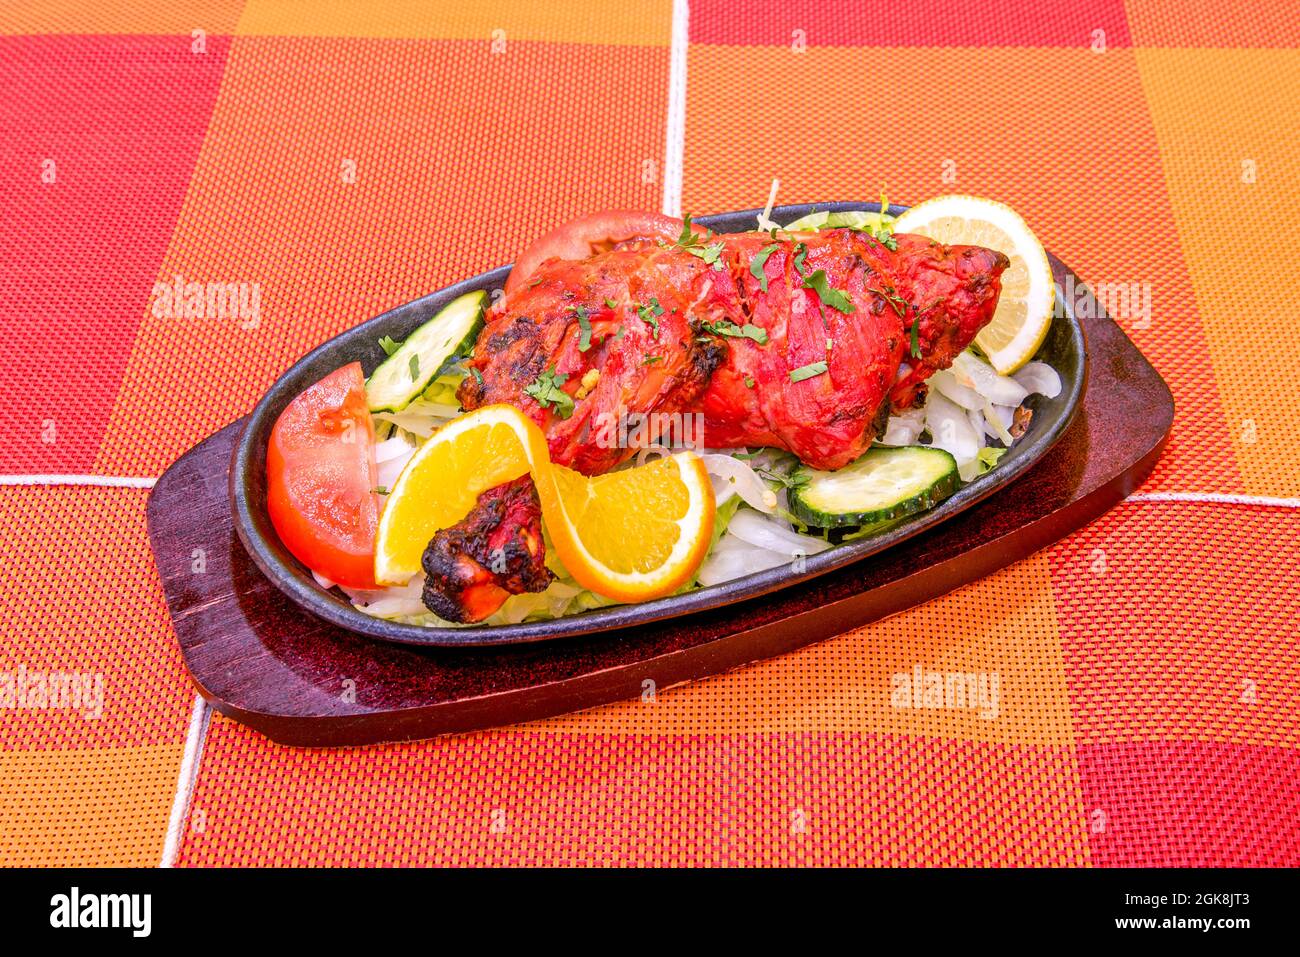 Gegrillter Hähnchenschenkel im Hindu-Tandoori-Stil mit leuchtend roter Farbe und verkohlten Grillmarkierungen auf der heißen Platte und dem orangefarbenen Tisch Stockfoto